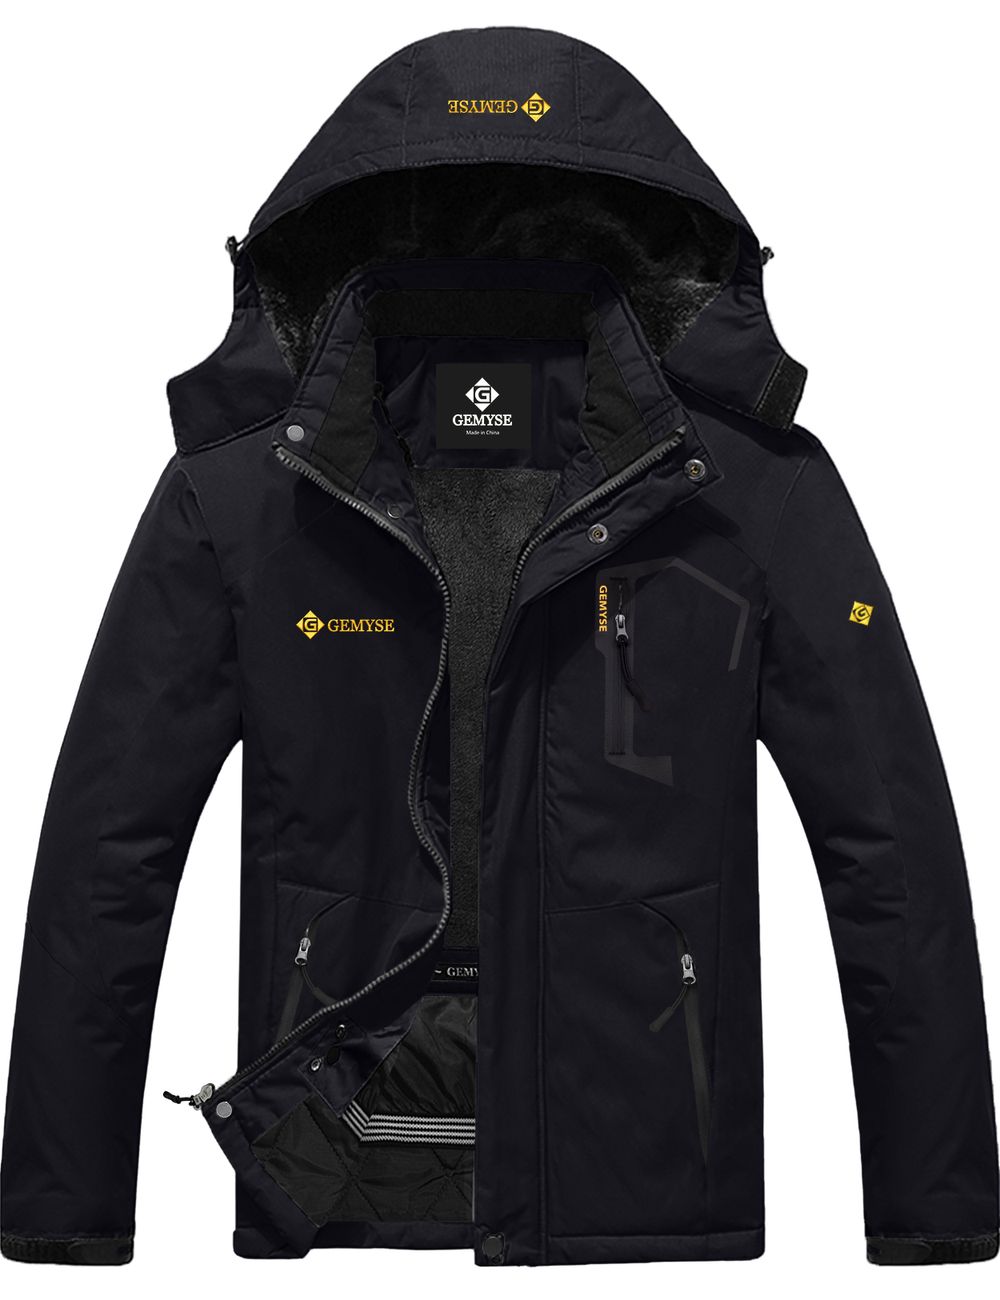 8FANS & GEMYSE Co-branded Men's Mountain Waterproof Ski Snow Jacket Winter Windproof Rain Jacket